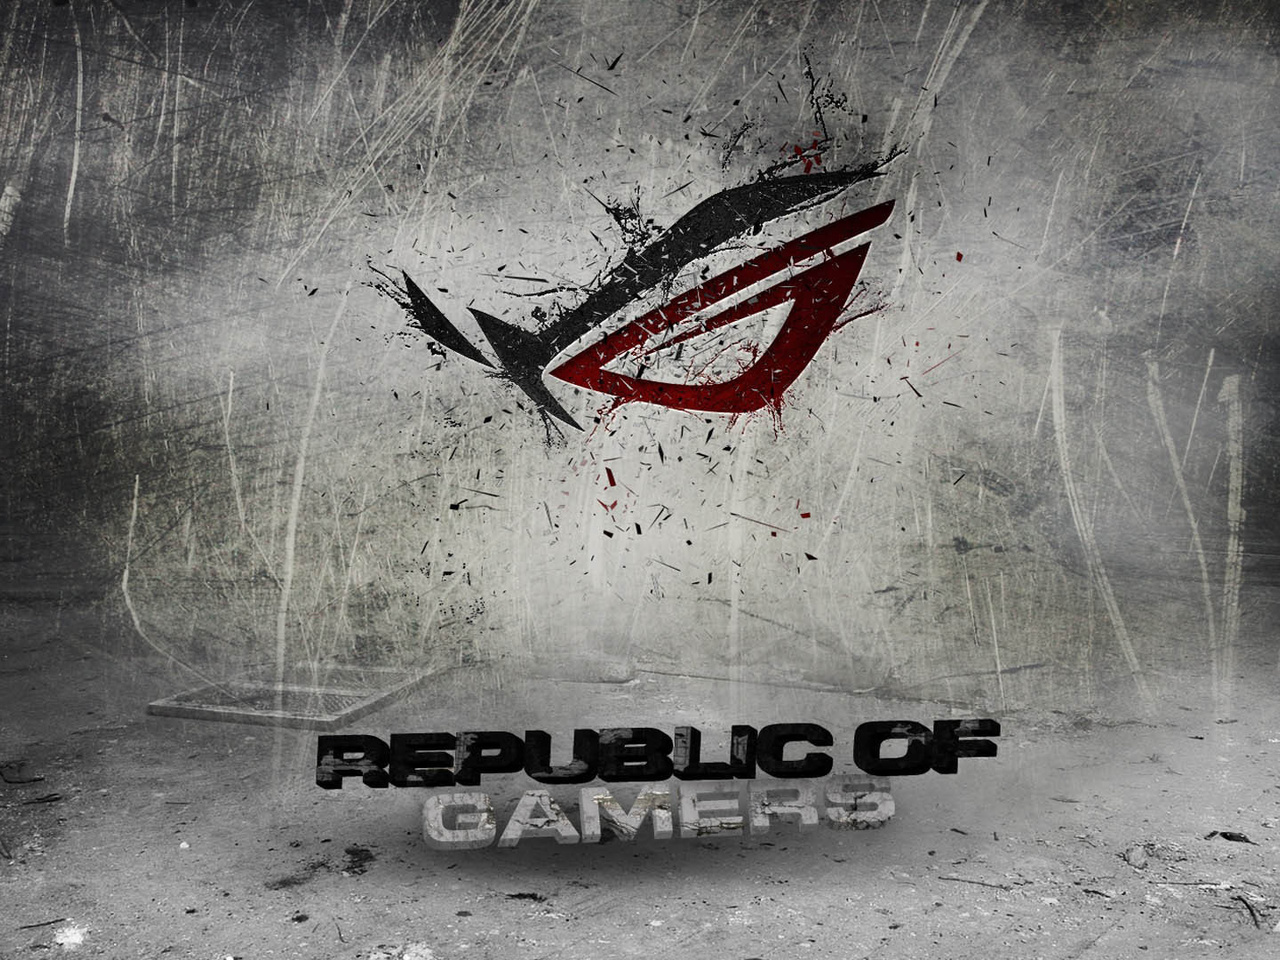 republic of gamers, Asus, logo